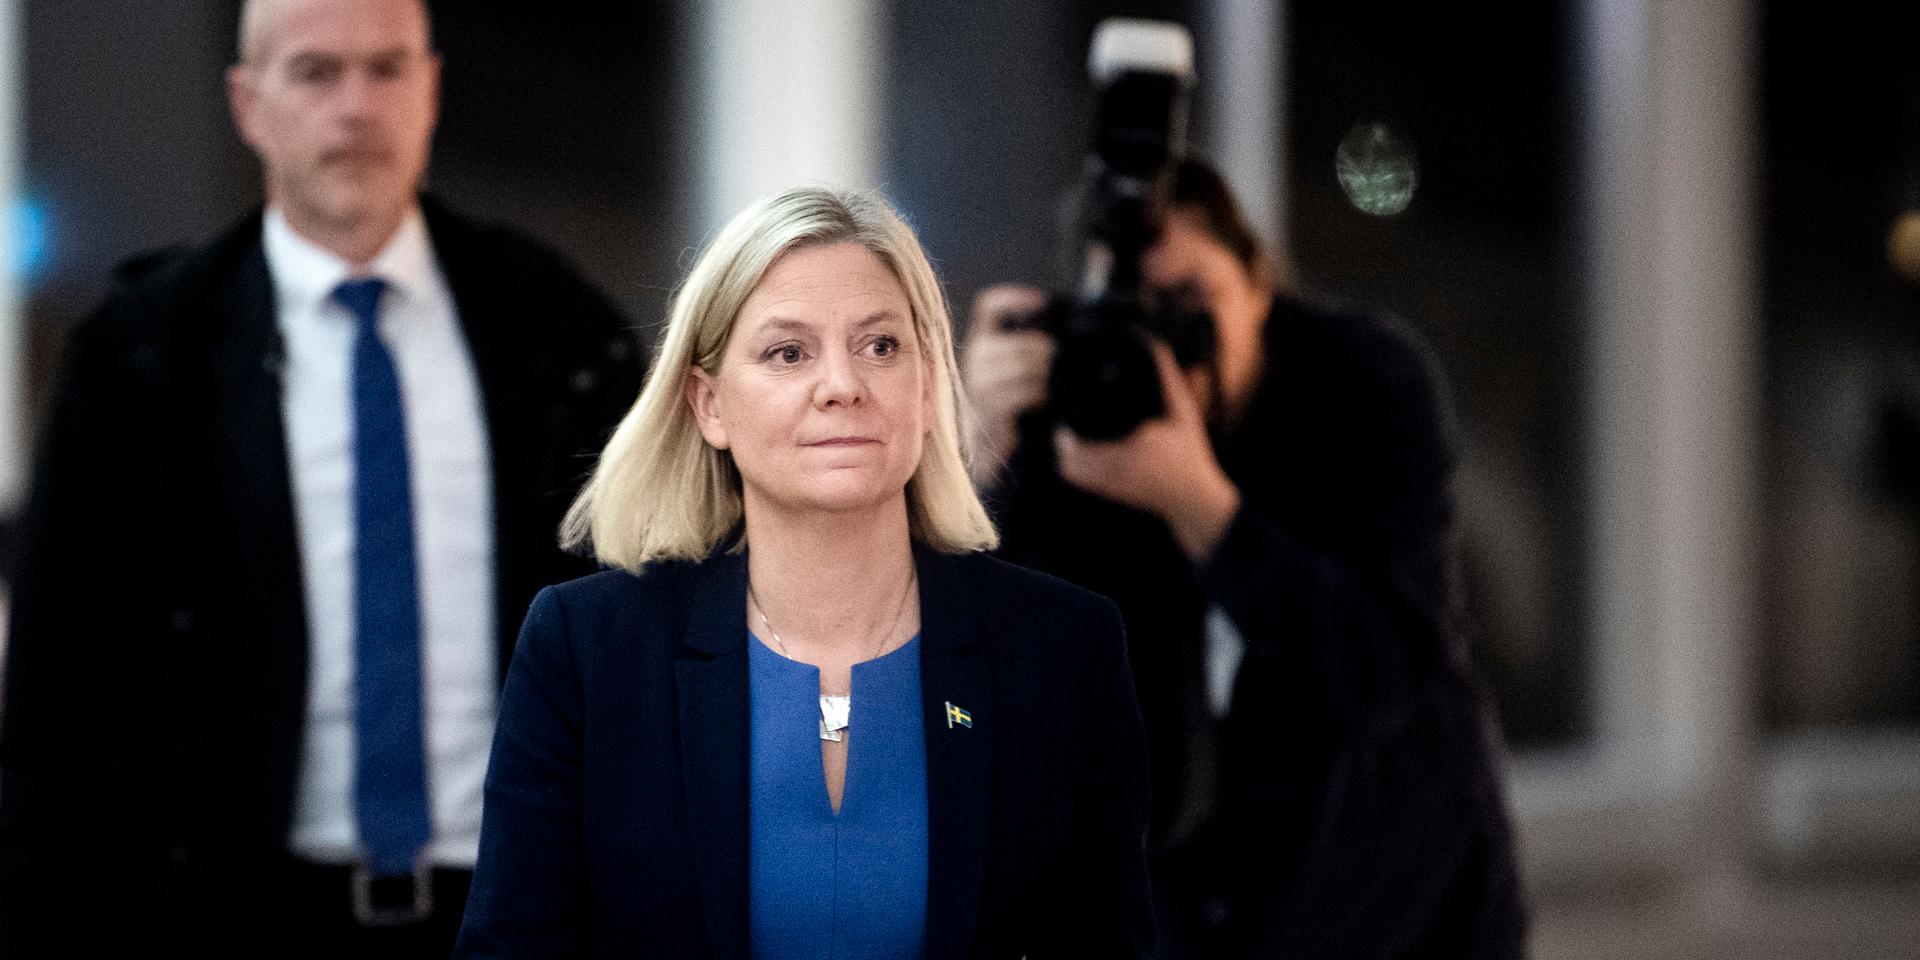 Sveriges nyvalda statsminister Magdalena Andersson (S) på väg till pressträffen där hon meddelar sin avgång då Miljöpartiet hoppat av regeringen innan den hunnit tillträda.